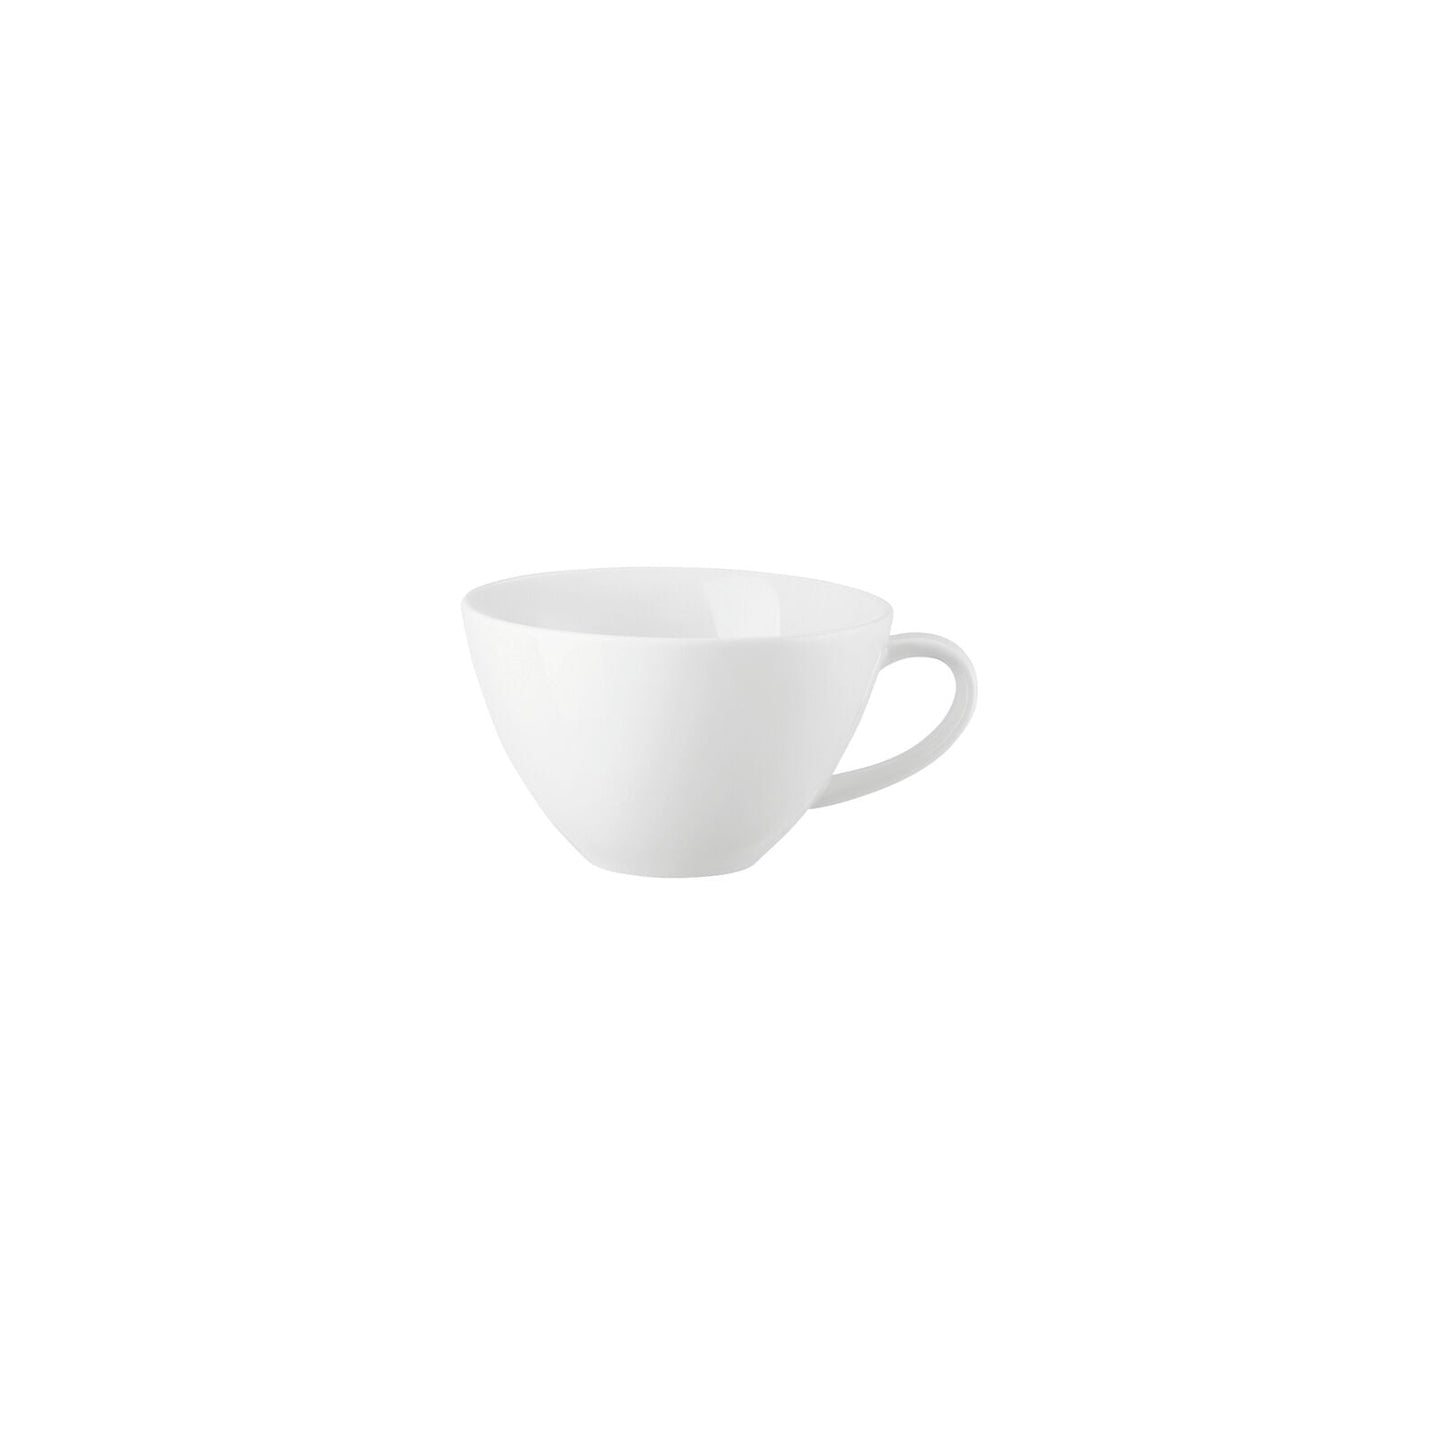 Cafe au lait Cup - 4 Units